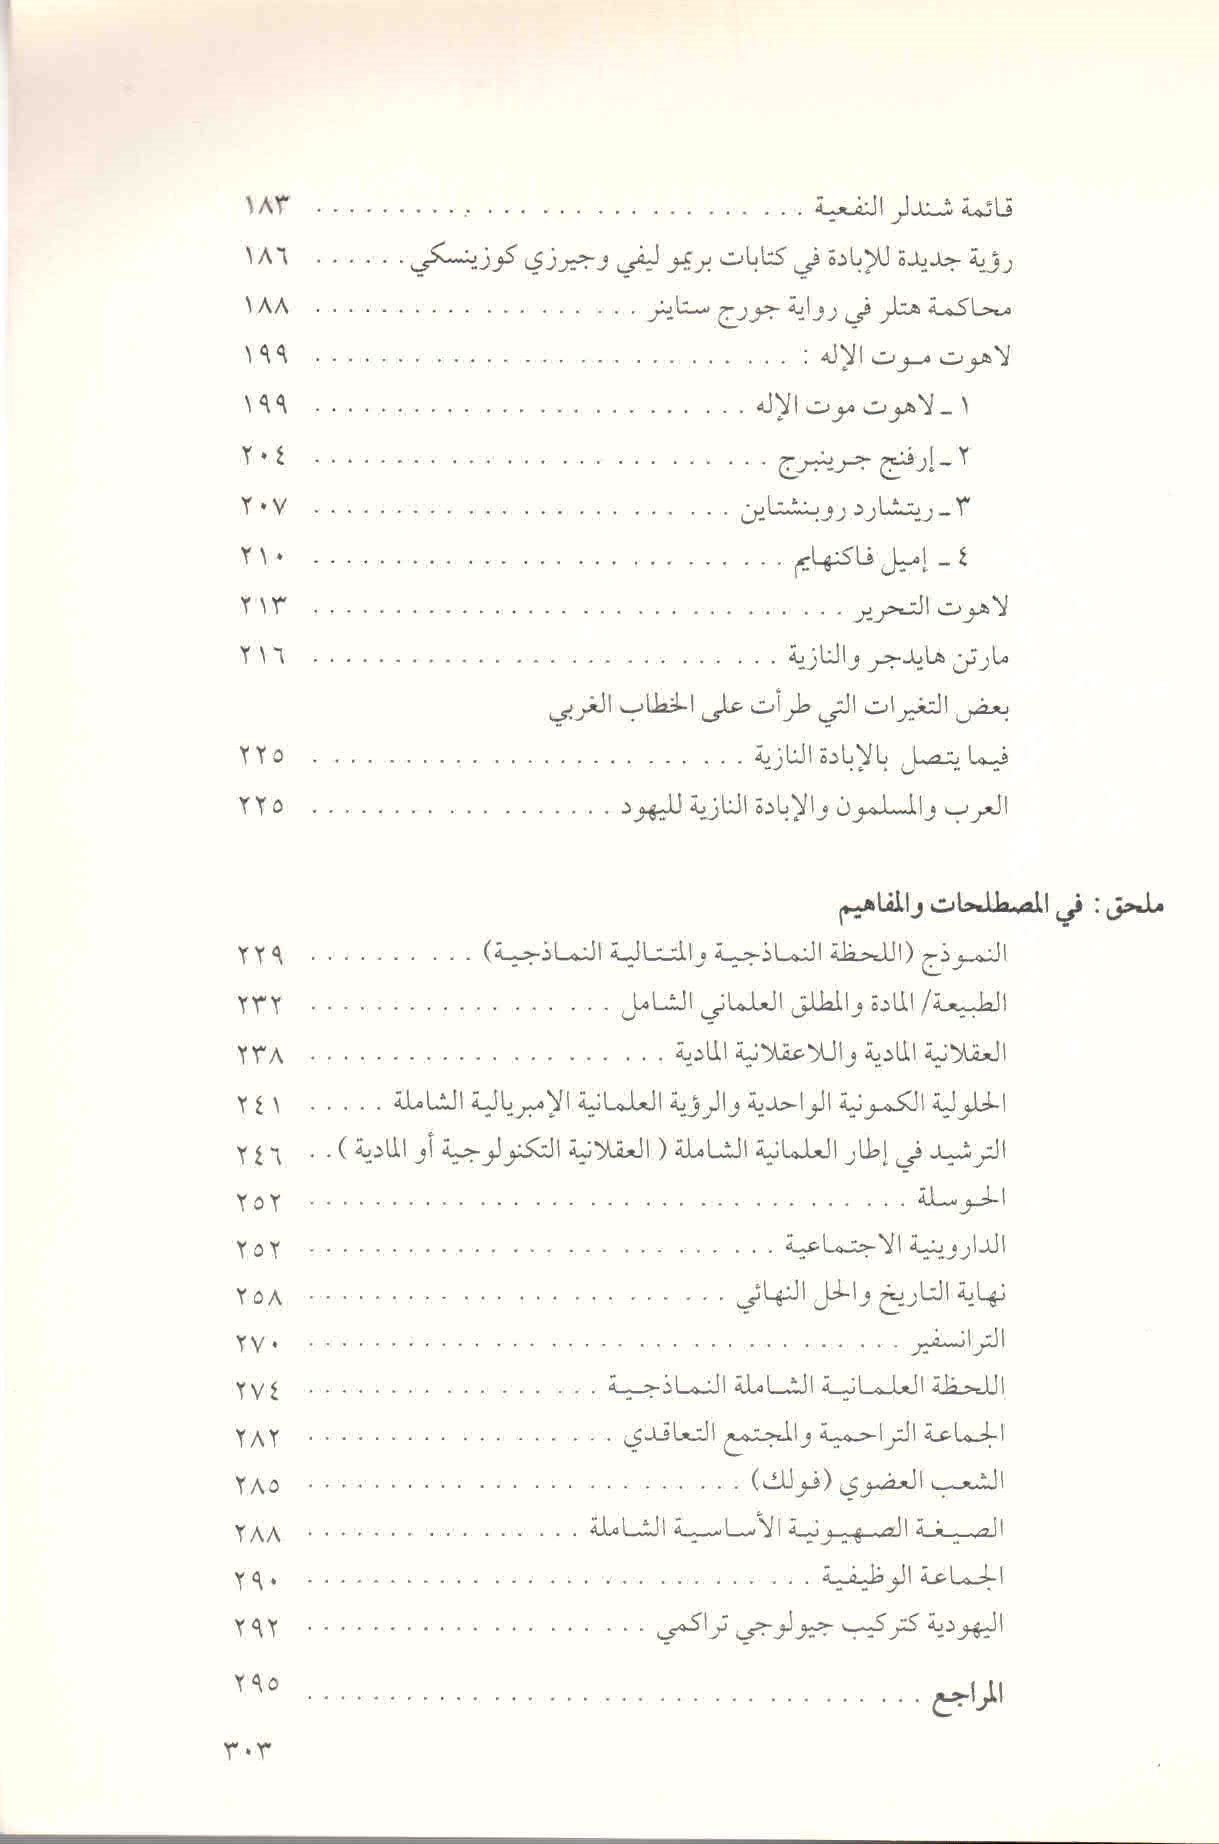 قائمة محتويات كتاب الصهيونية والنازية ونهاية التاريخ ص. 303.